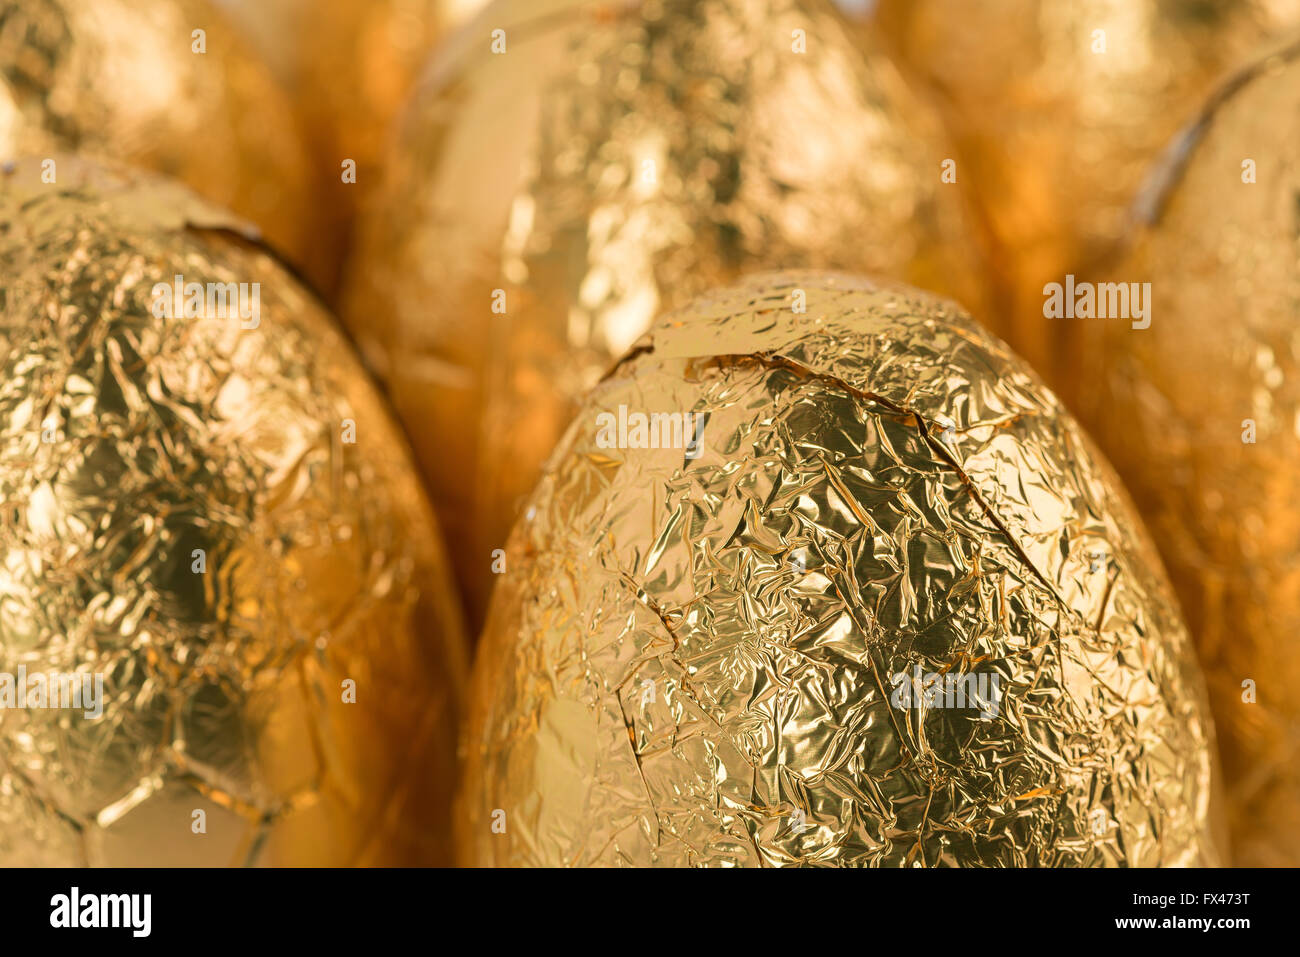 über Nachsicht in Schokolade Ostereier eingewickelt in glänzender Goldfolie in Reihen bereit für Schokoholiker Übergewicht Gesundheitsproblem Stockfoto